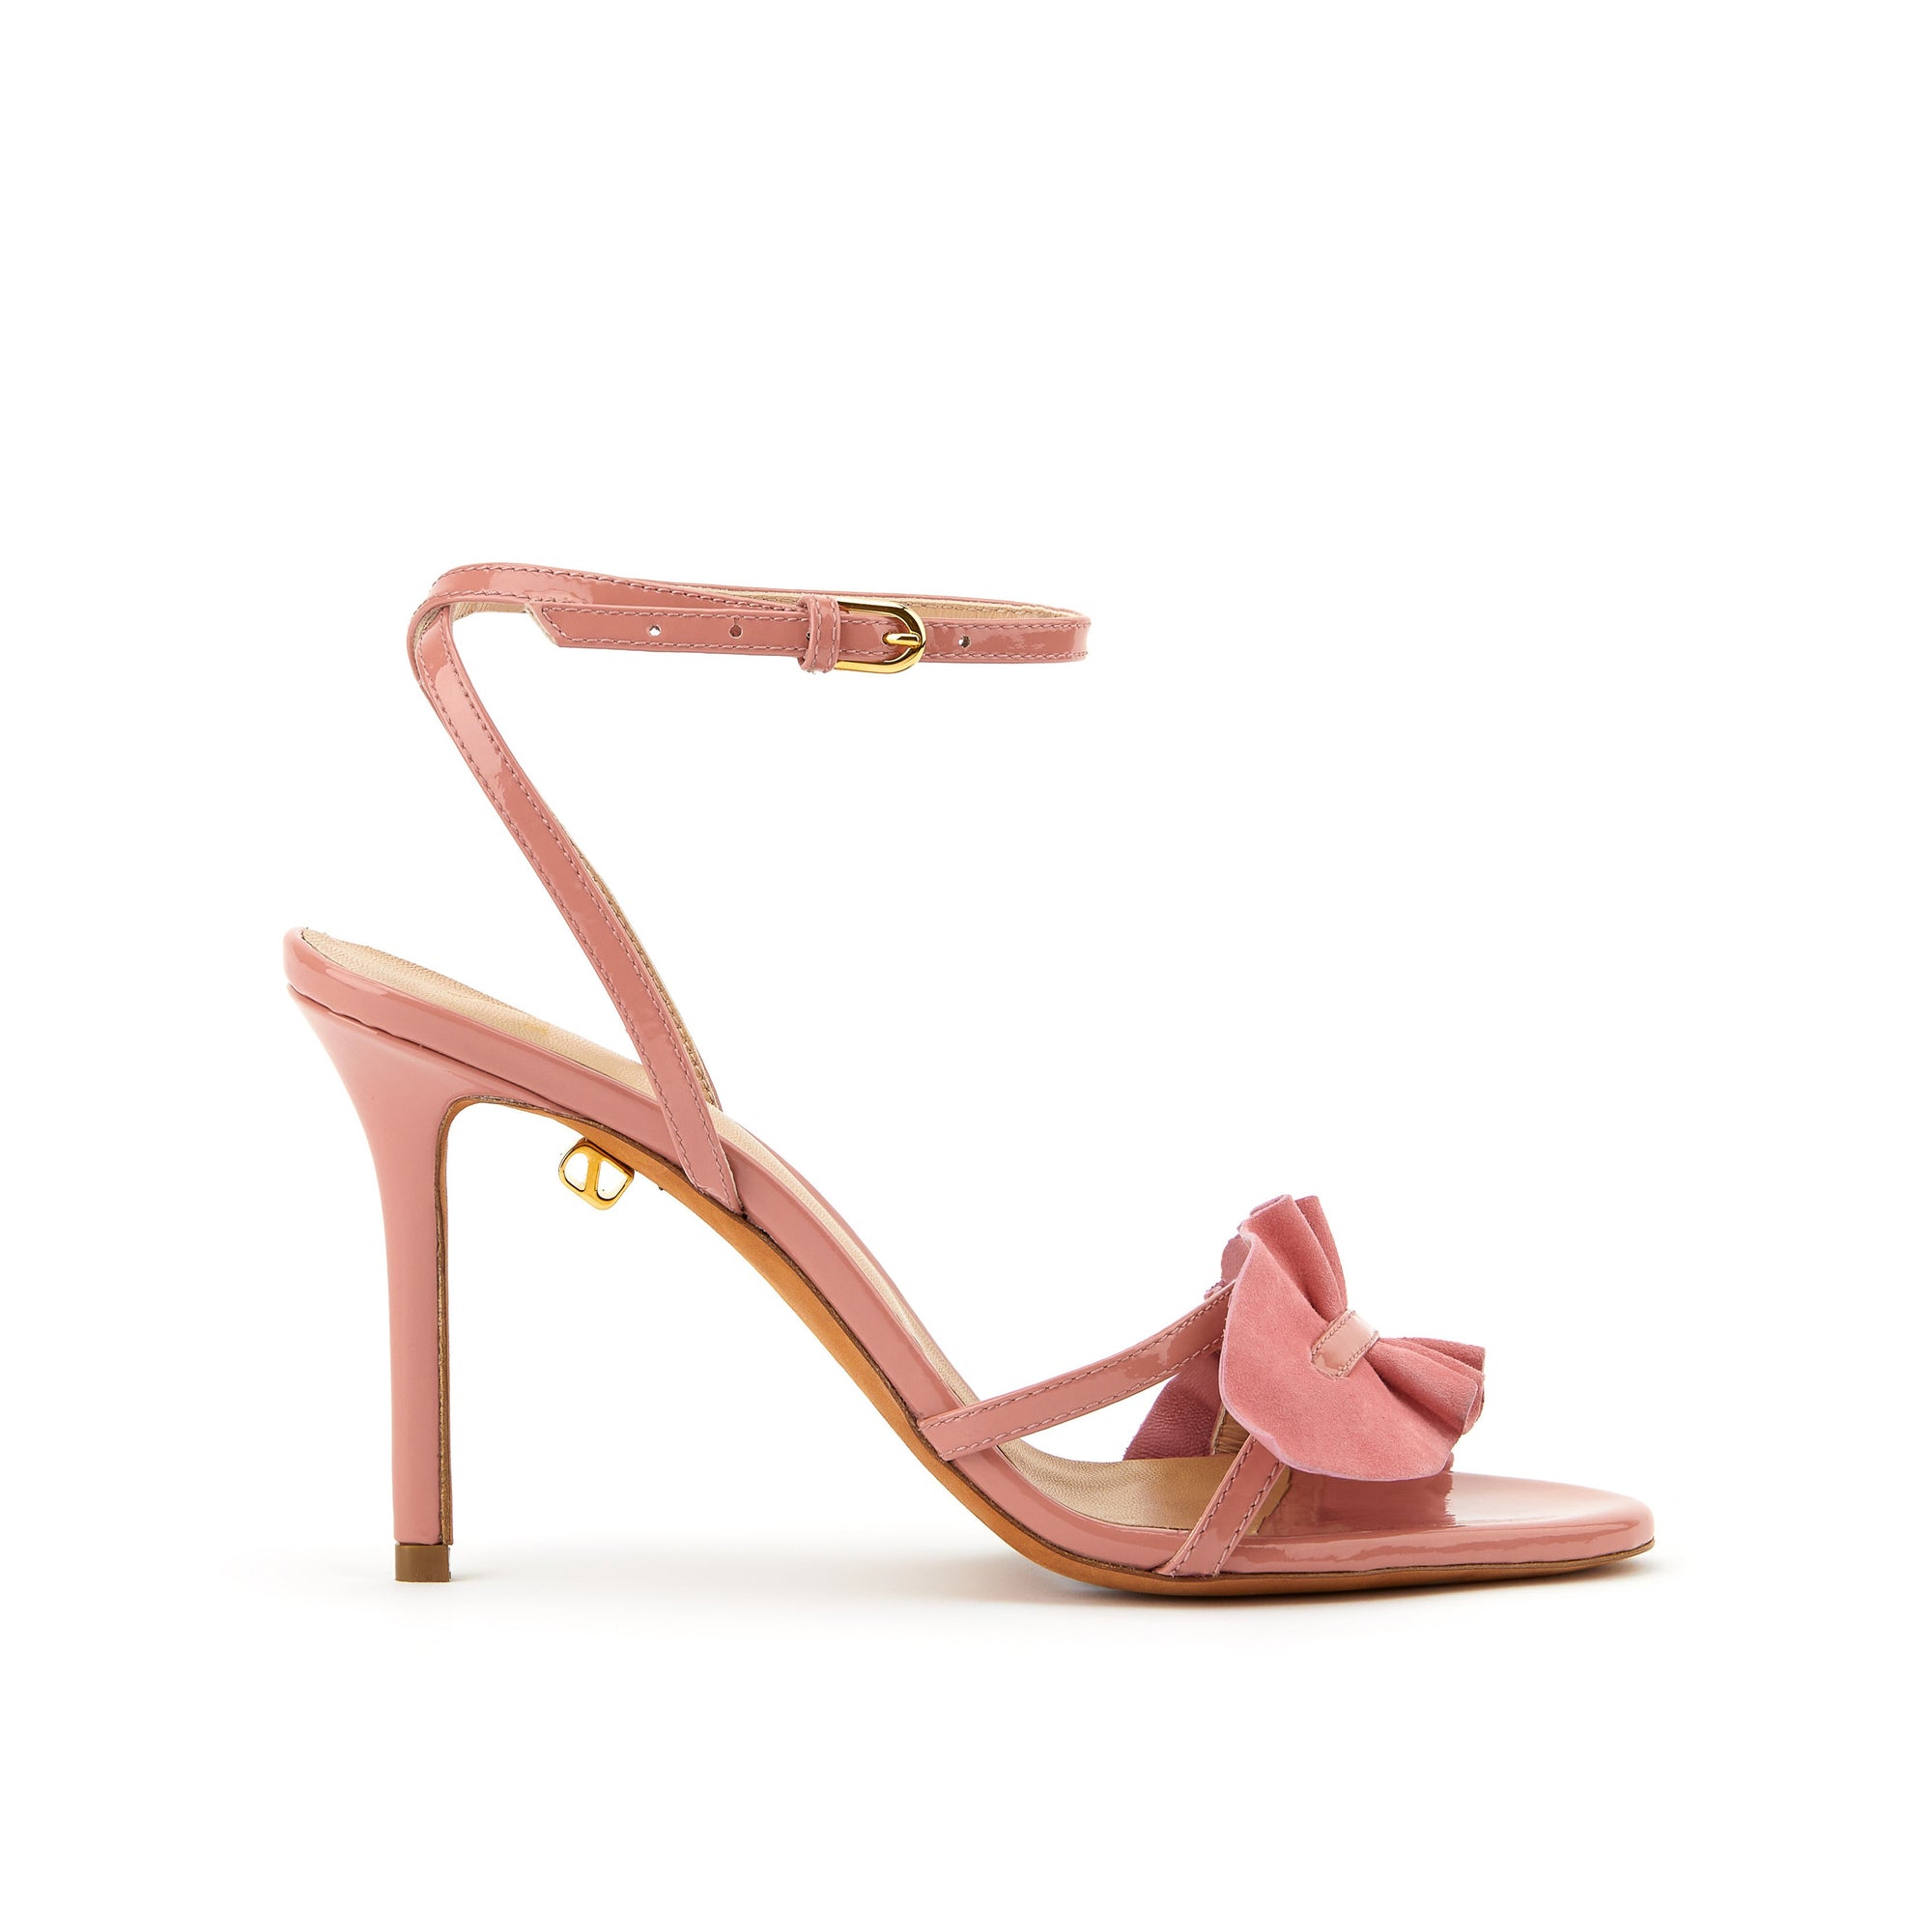 Almudena 90 heeled sandals in suede - Rose